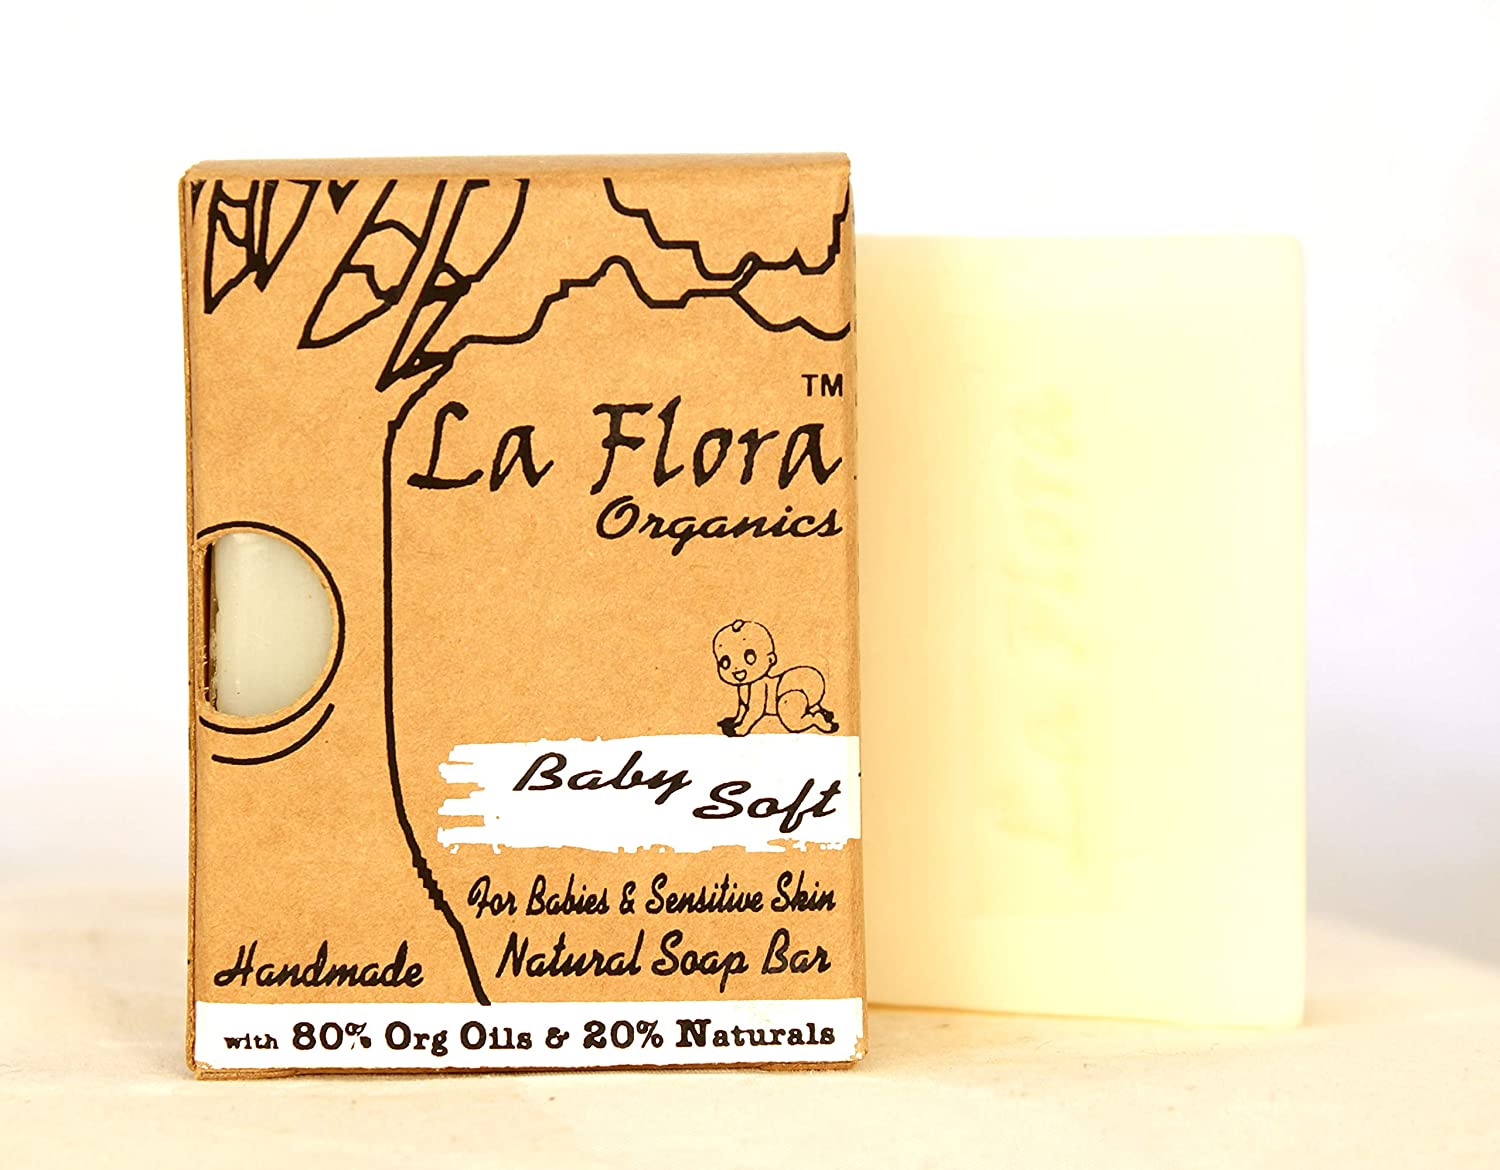 La Flora organics soap